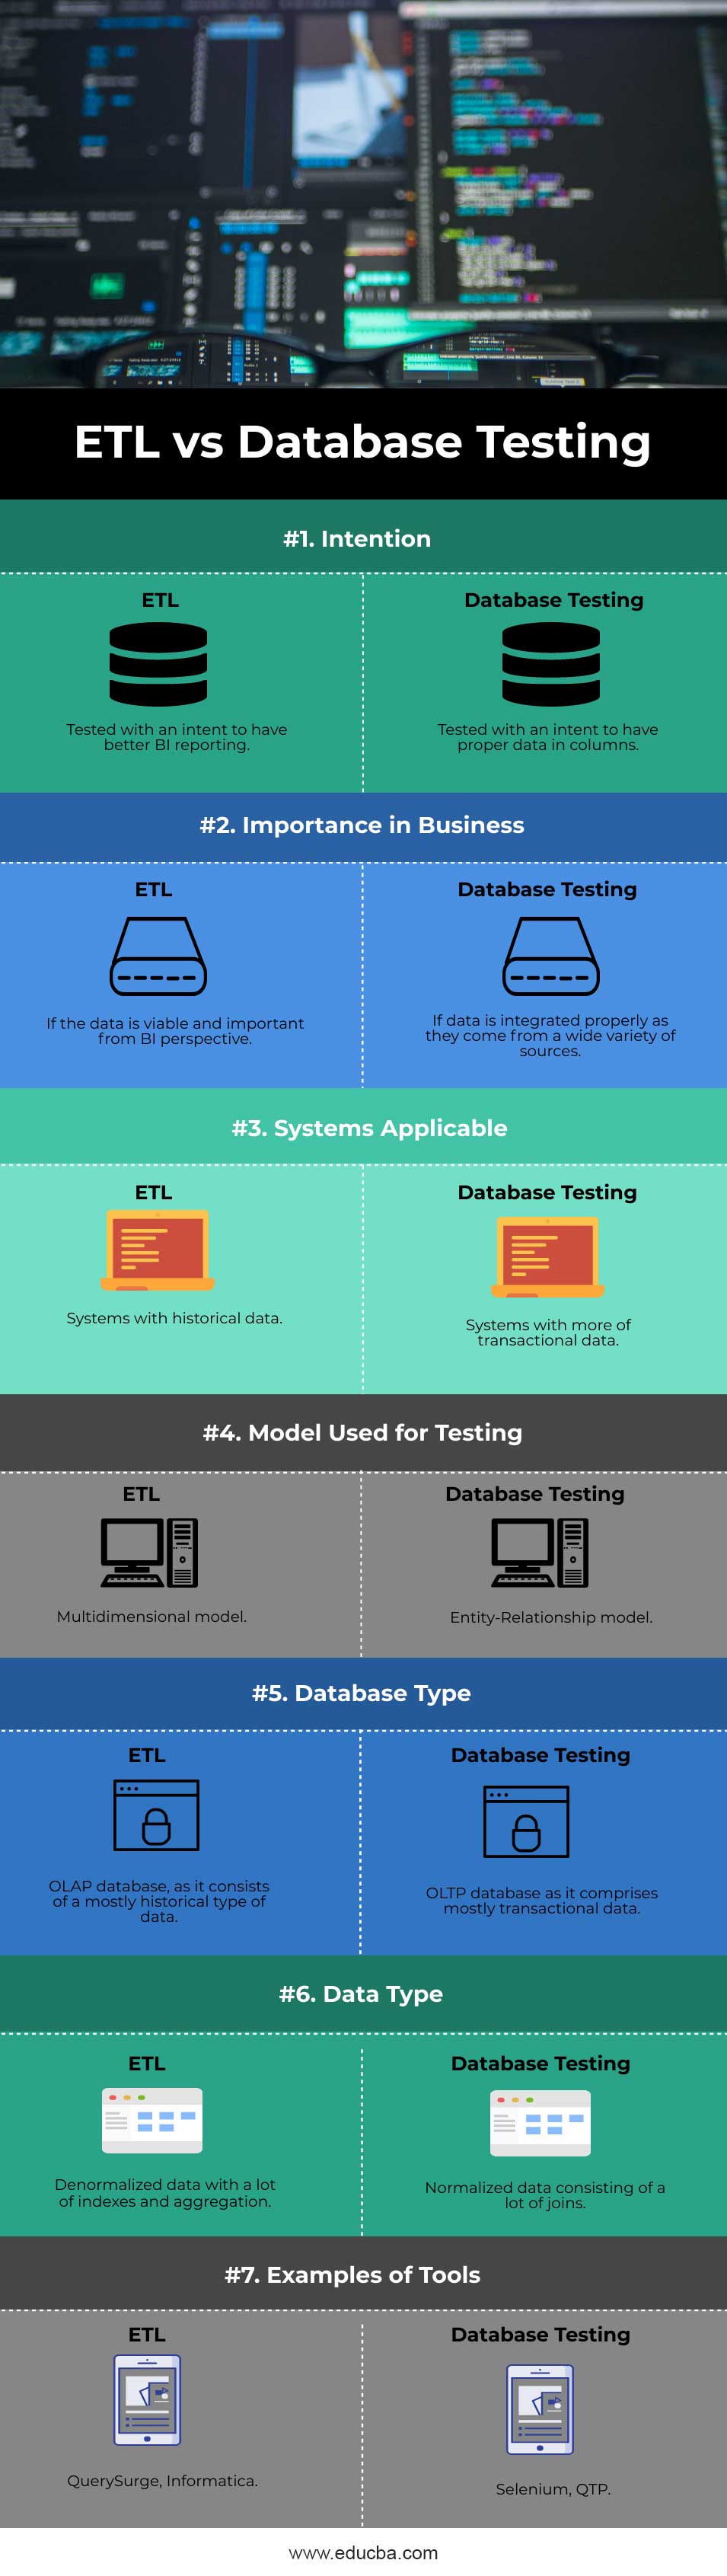 ETL-Vs-Database-Testing-info